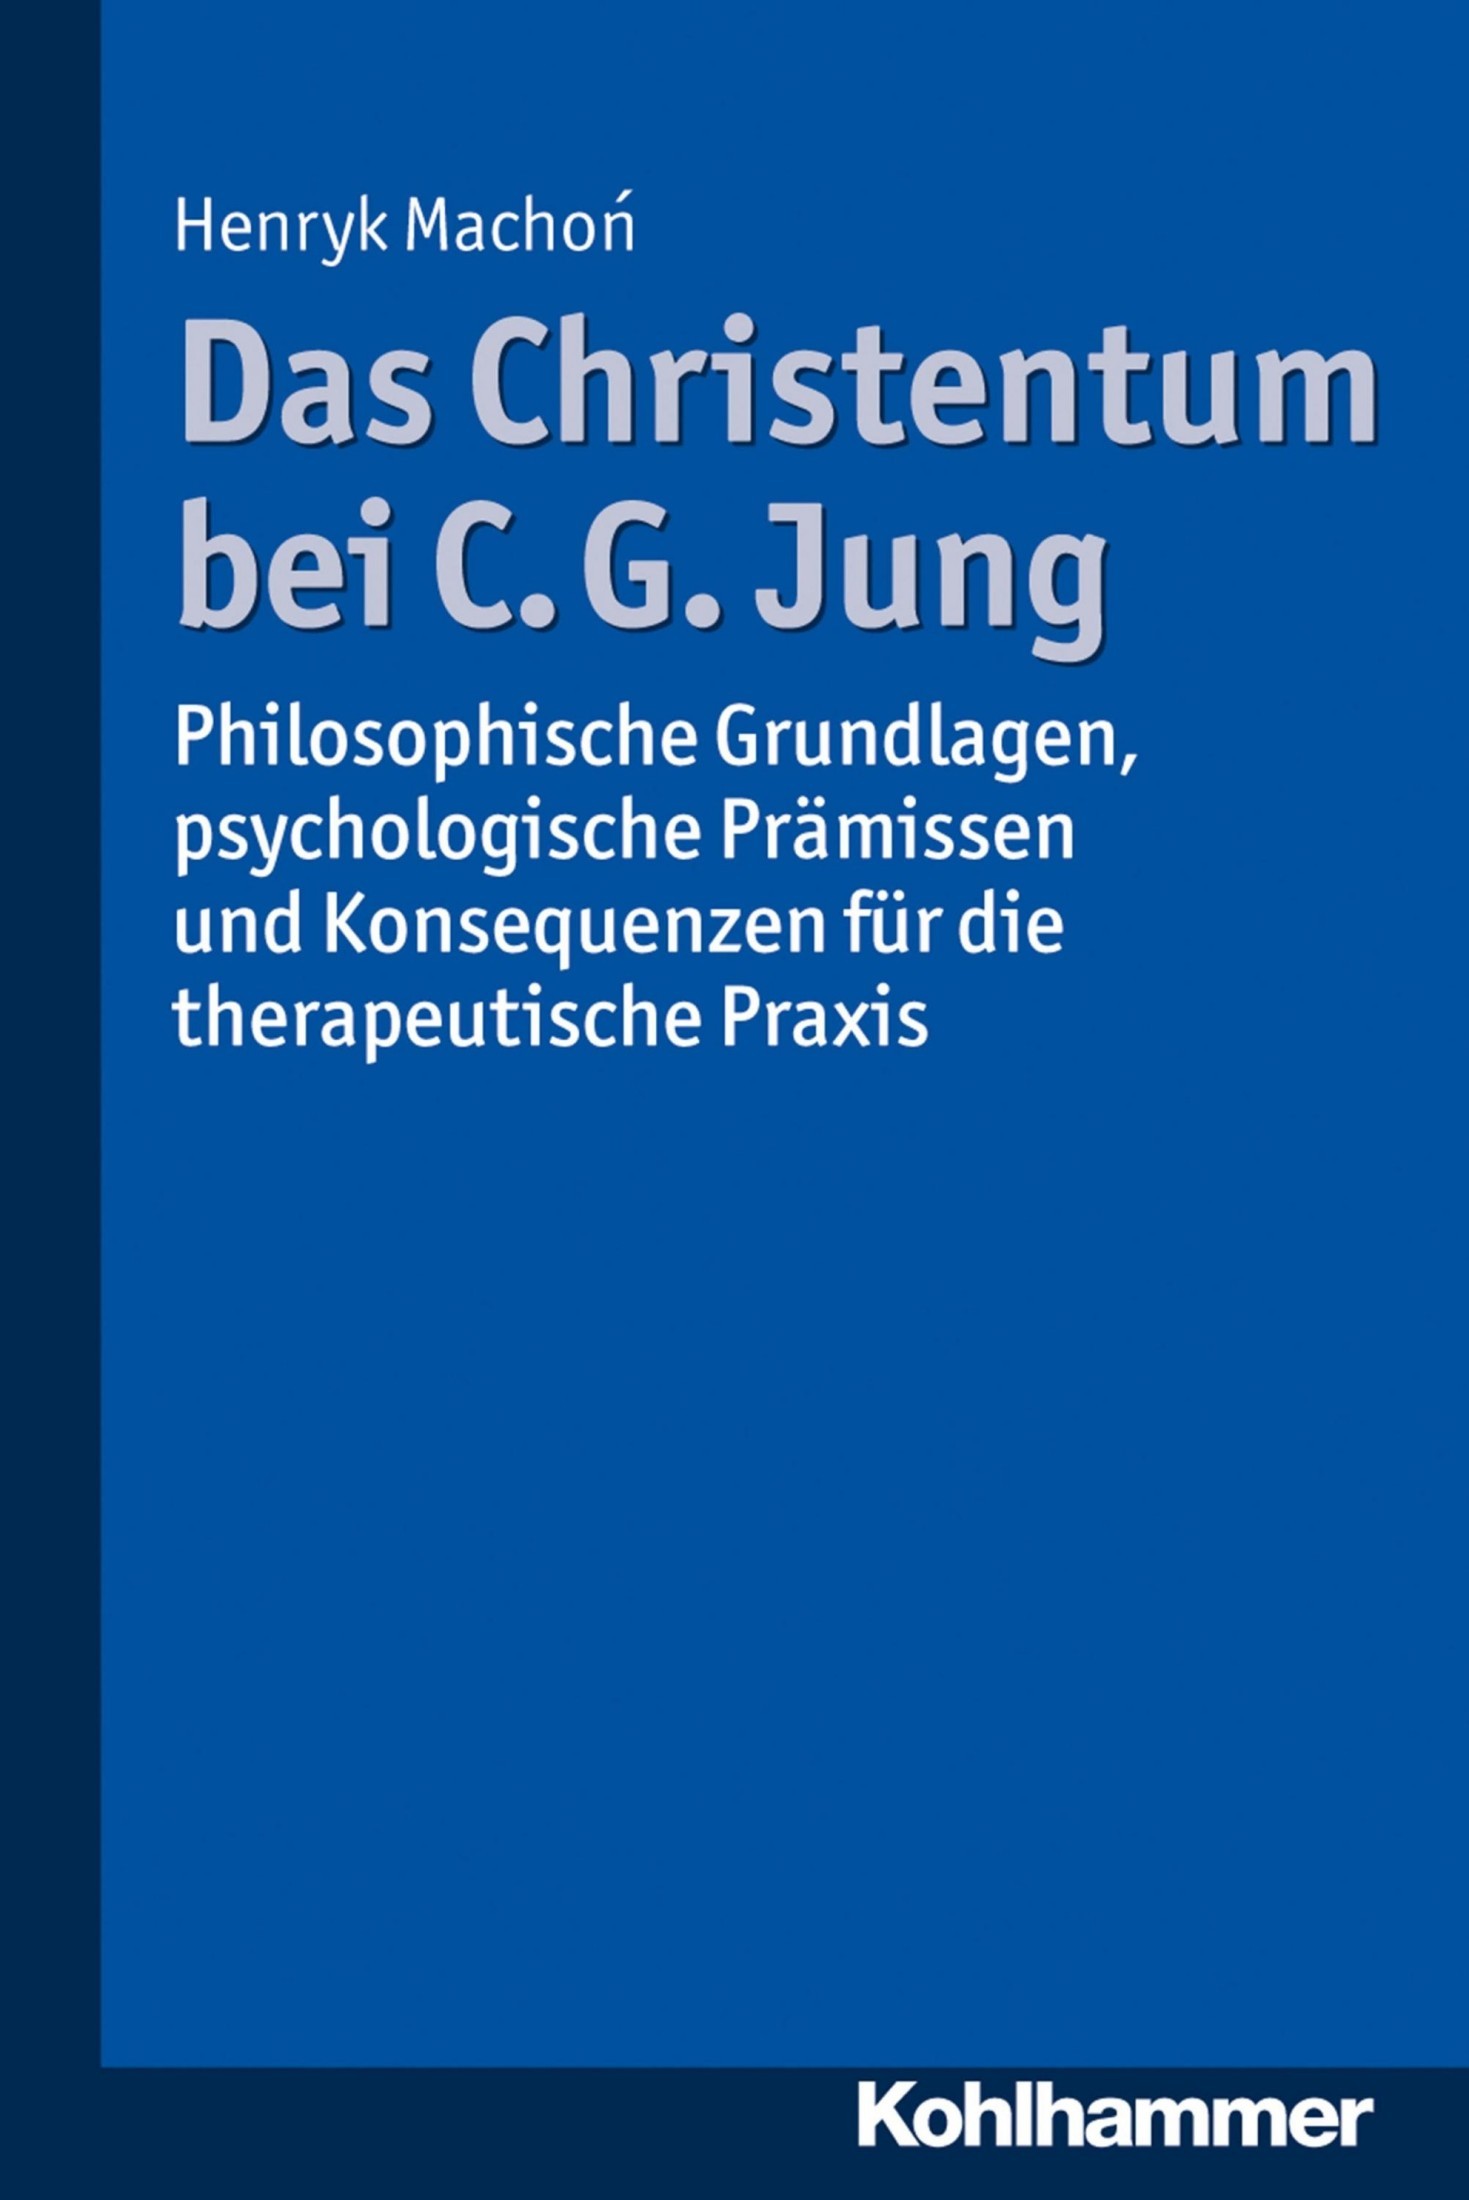 Das Christentum bei C. G. Jung: Philosophische Grundlagen, psychologische Prämissen und Konsequenzen für die therapeutische Praxis